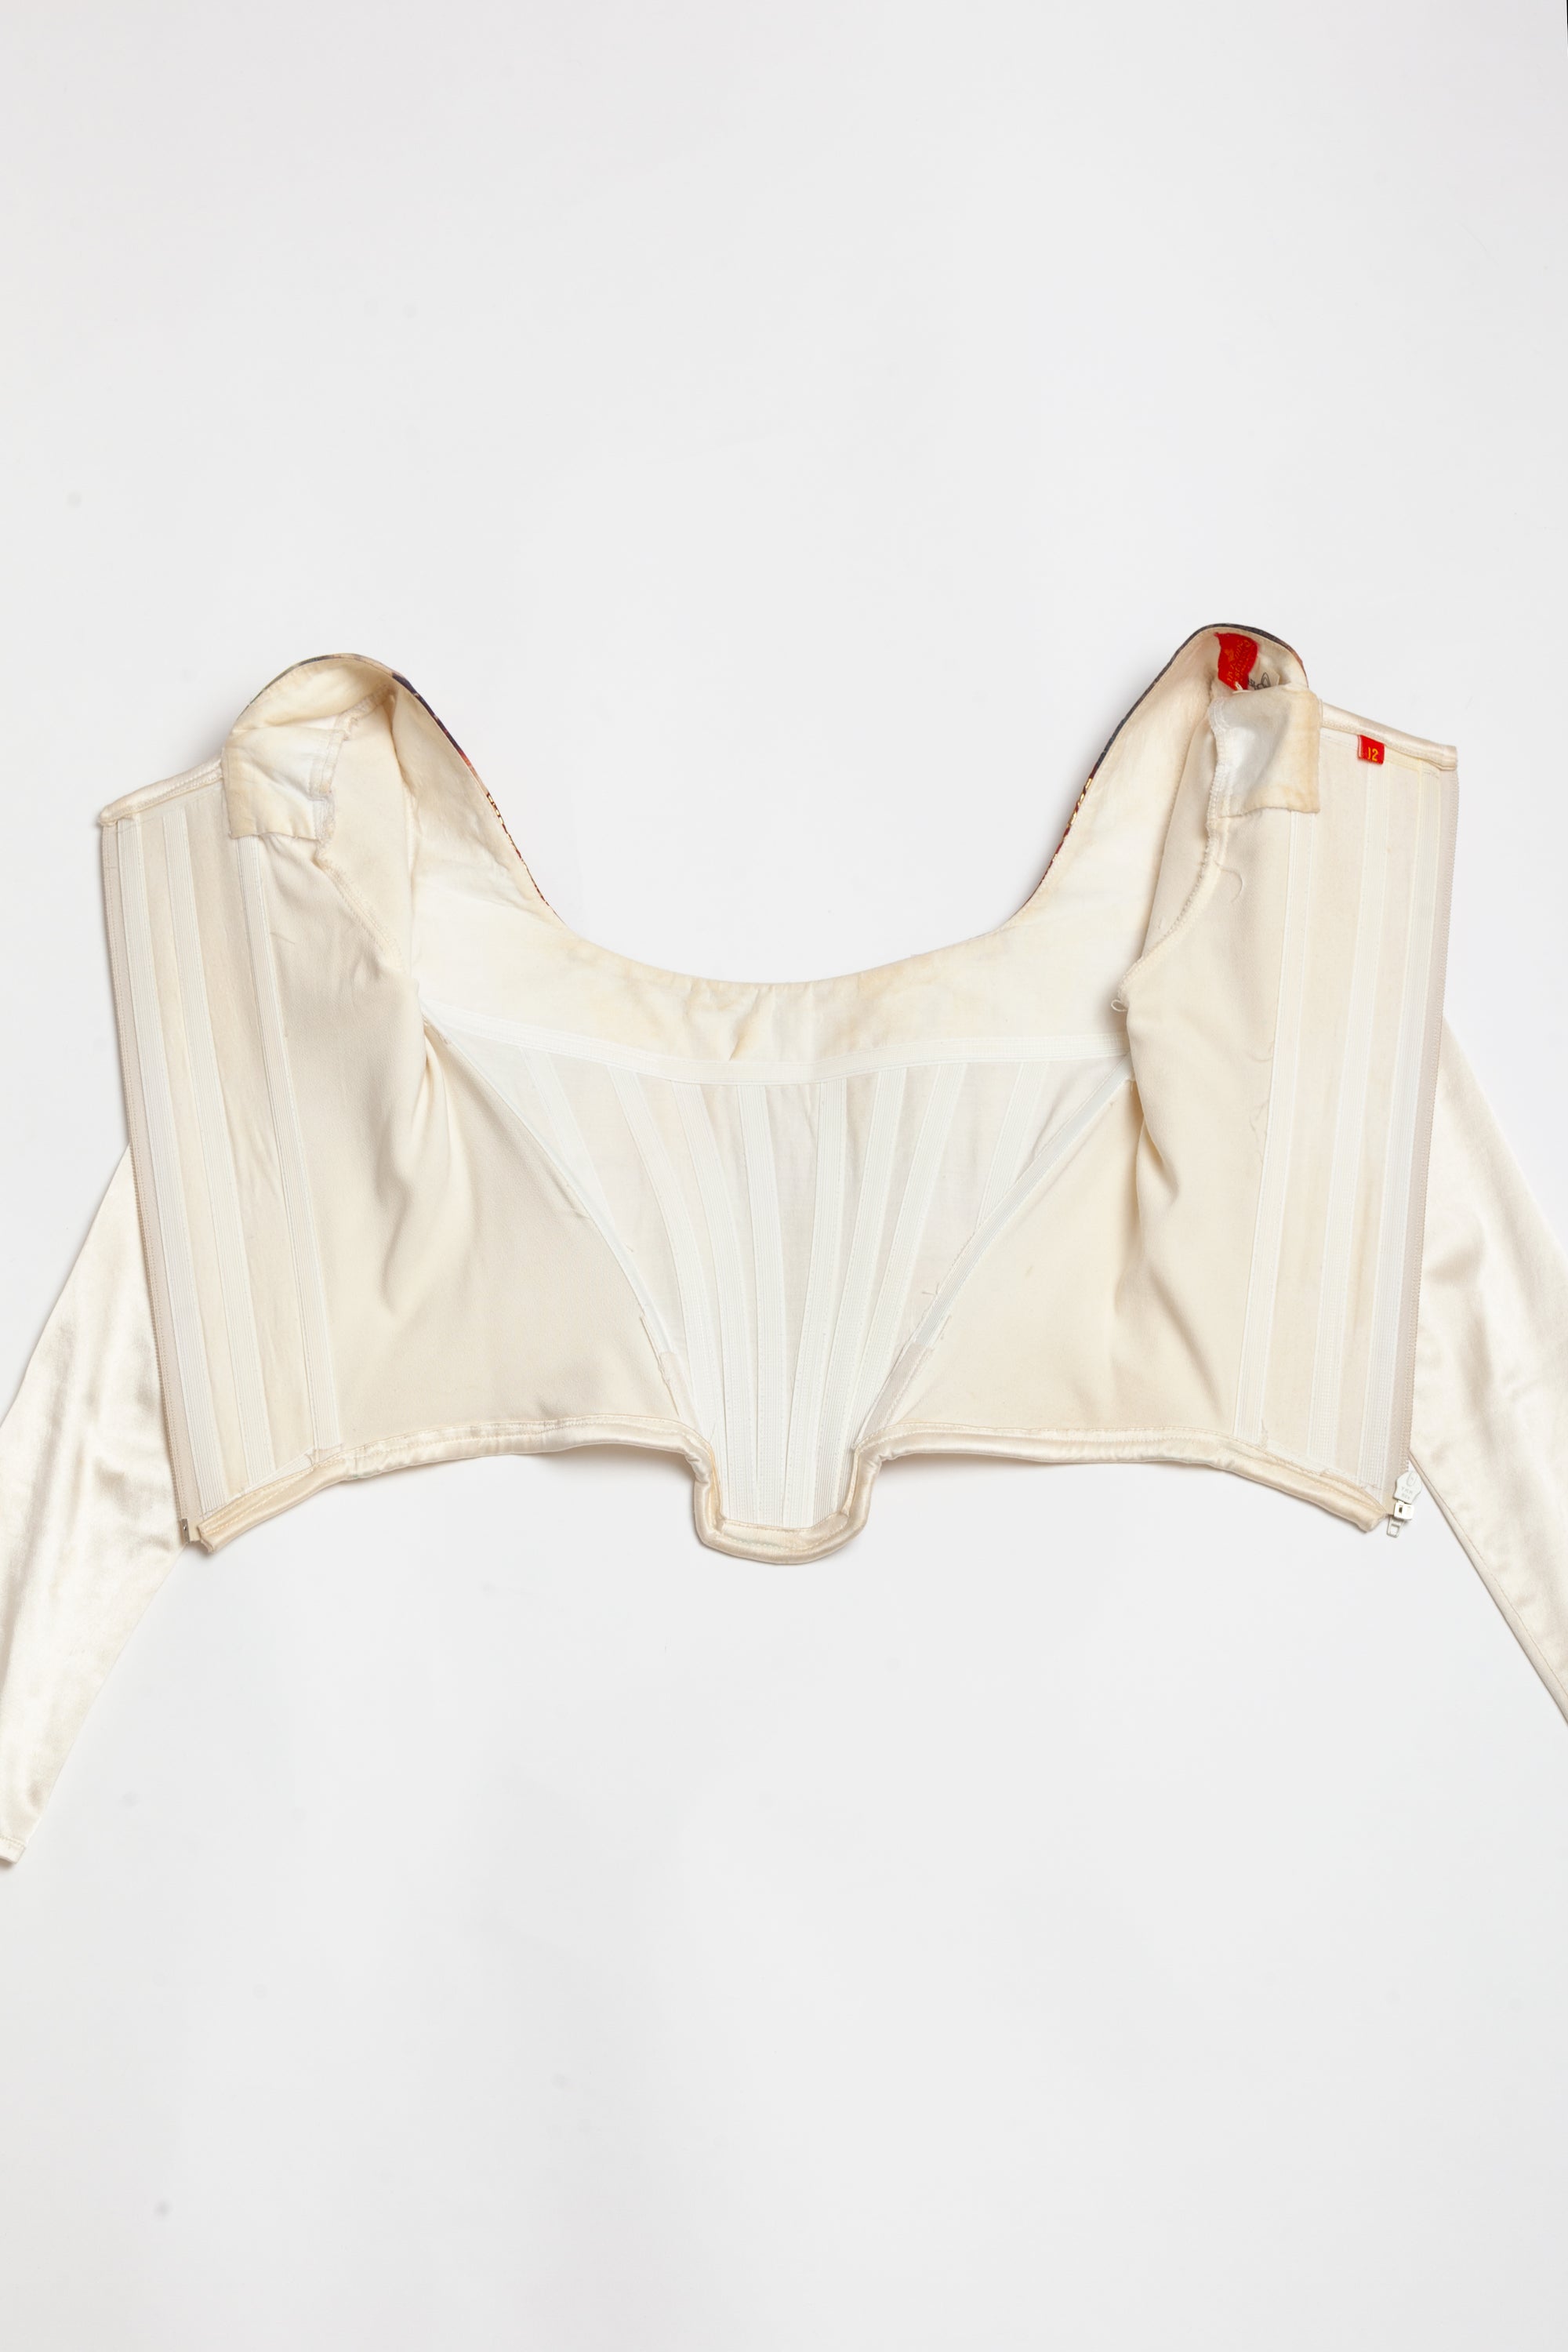 Vivienne Westwood <br> A/W 1990/91 'Portrait' swarm of cupids corset